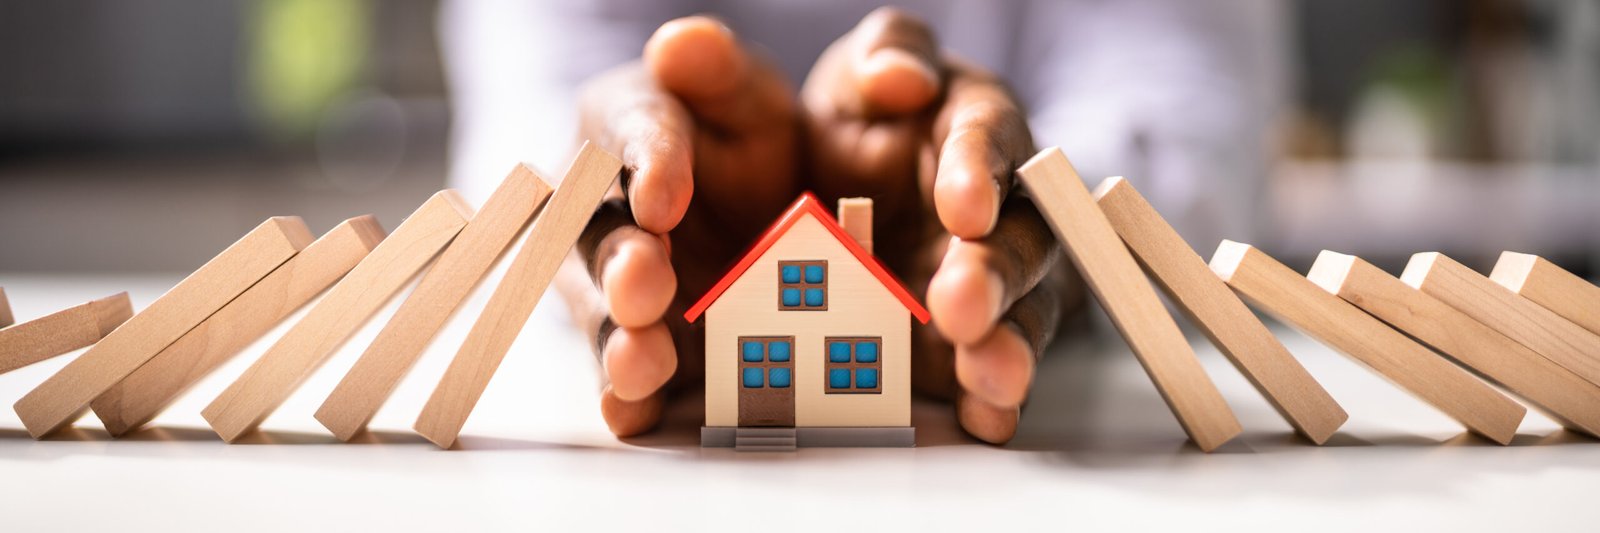 Une personne protégeant une petite maison avec ses mains, une métaphore puissante pour l'assurance et la sécurité dans le secteur immobilier.